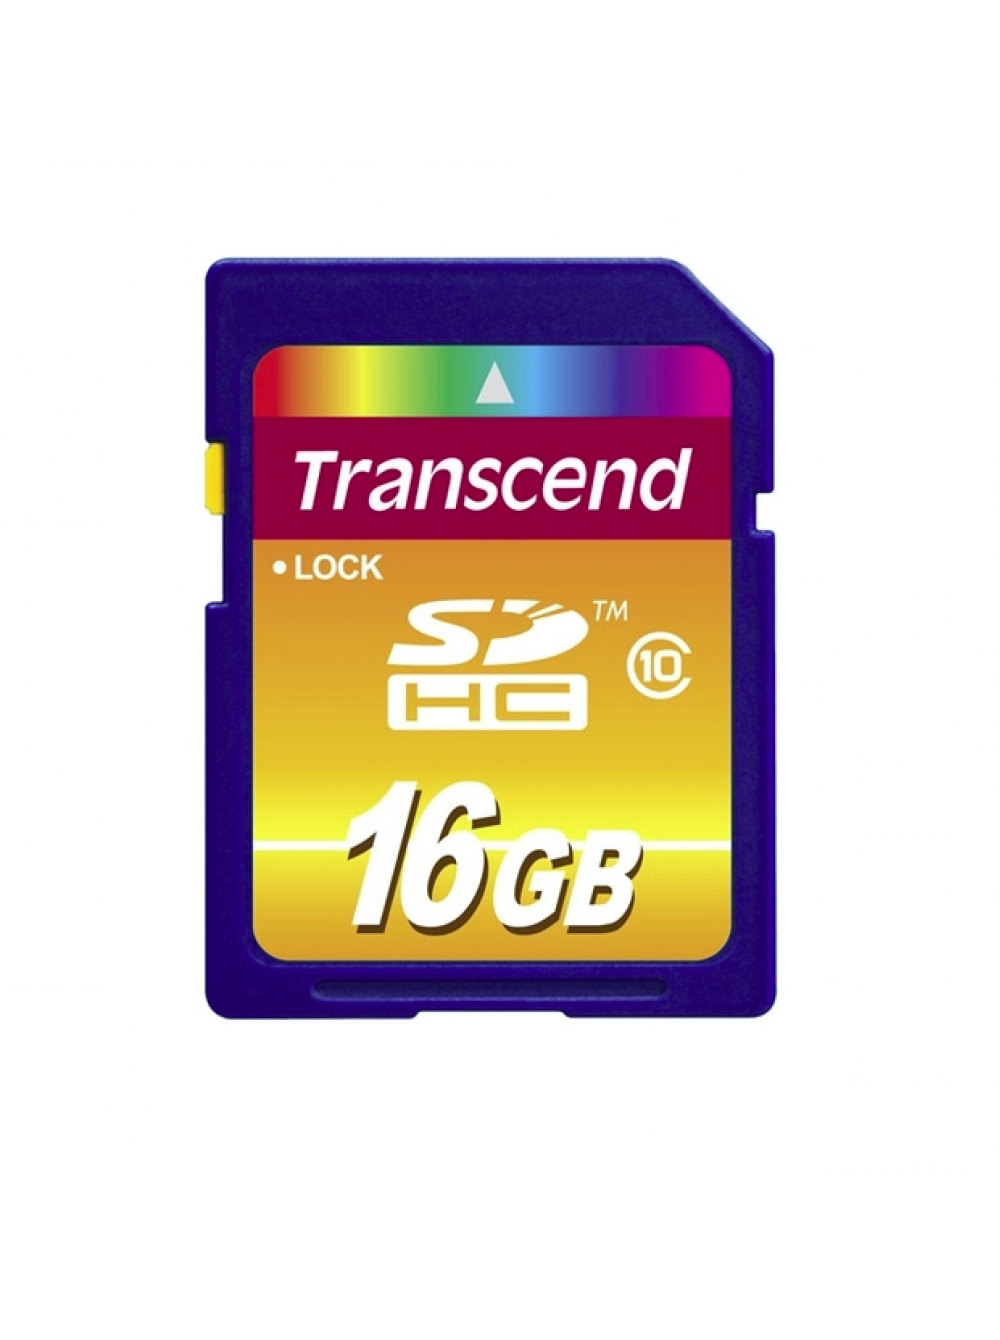 Класс памяти sd. SDHC Transcend class 4. Карта памяти Transcend 32gb class 10. Transcend SDHC 16gb class 10. SD карта Transcend 32 GB.